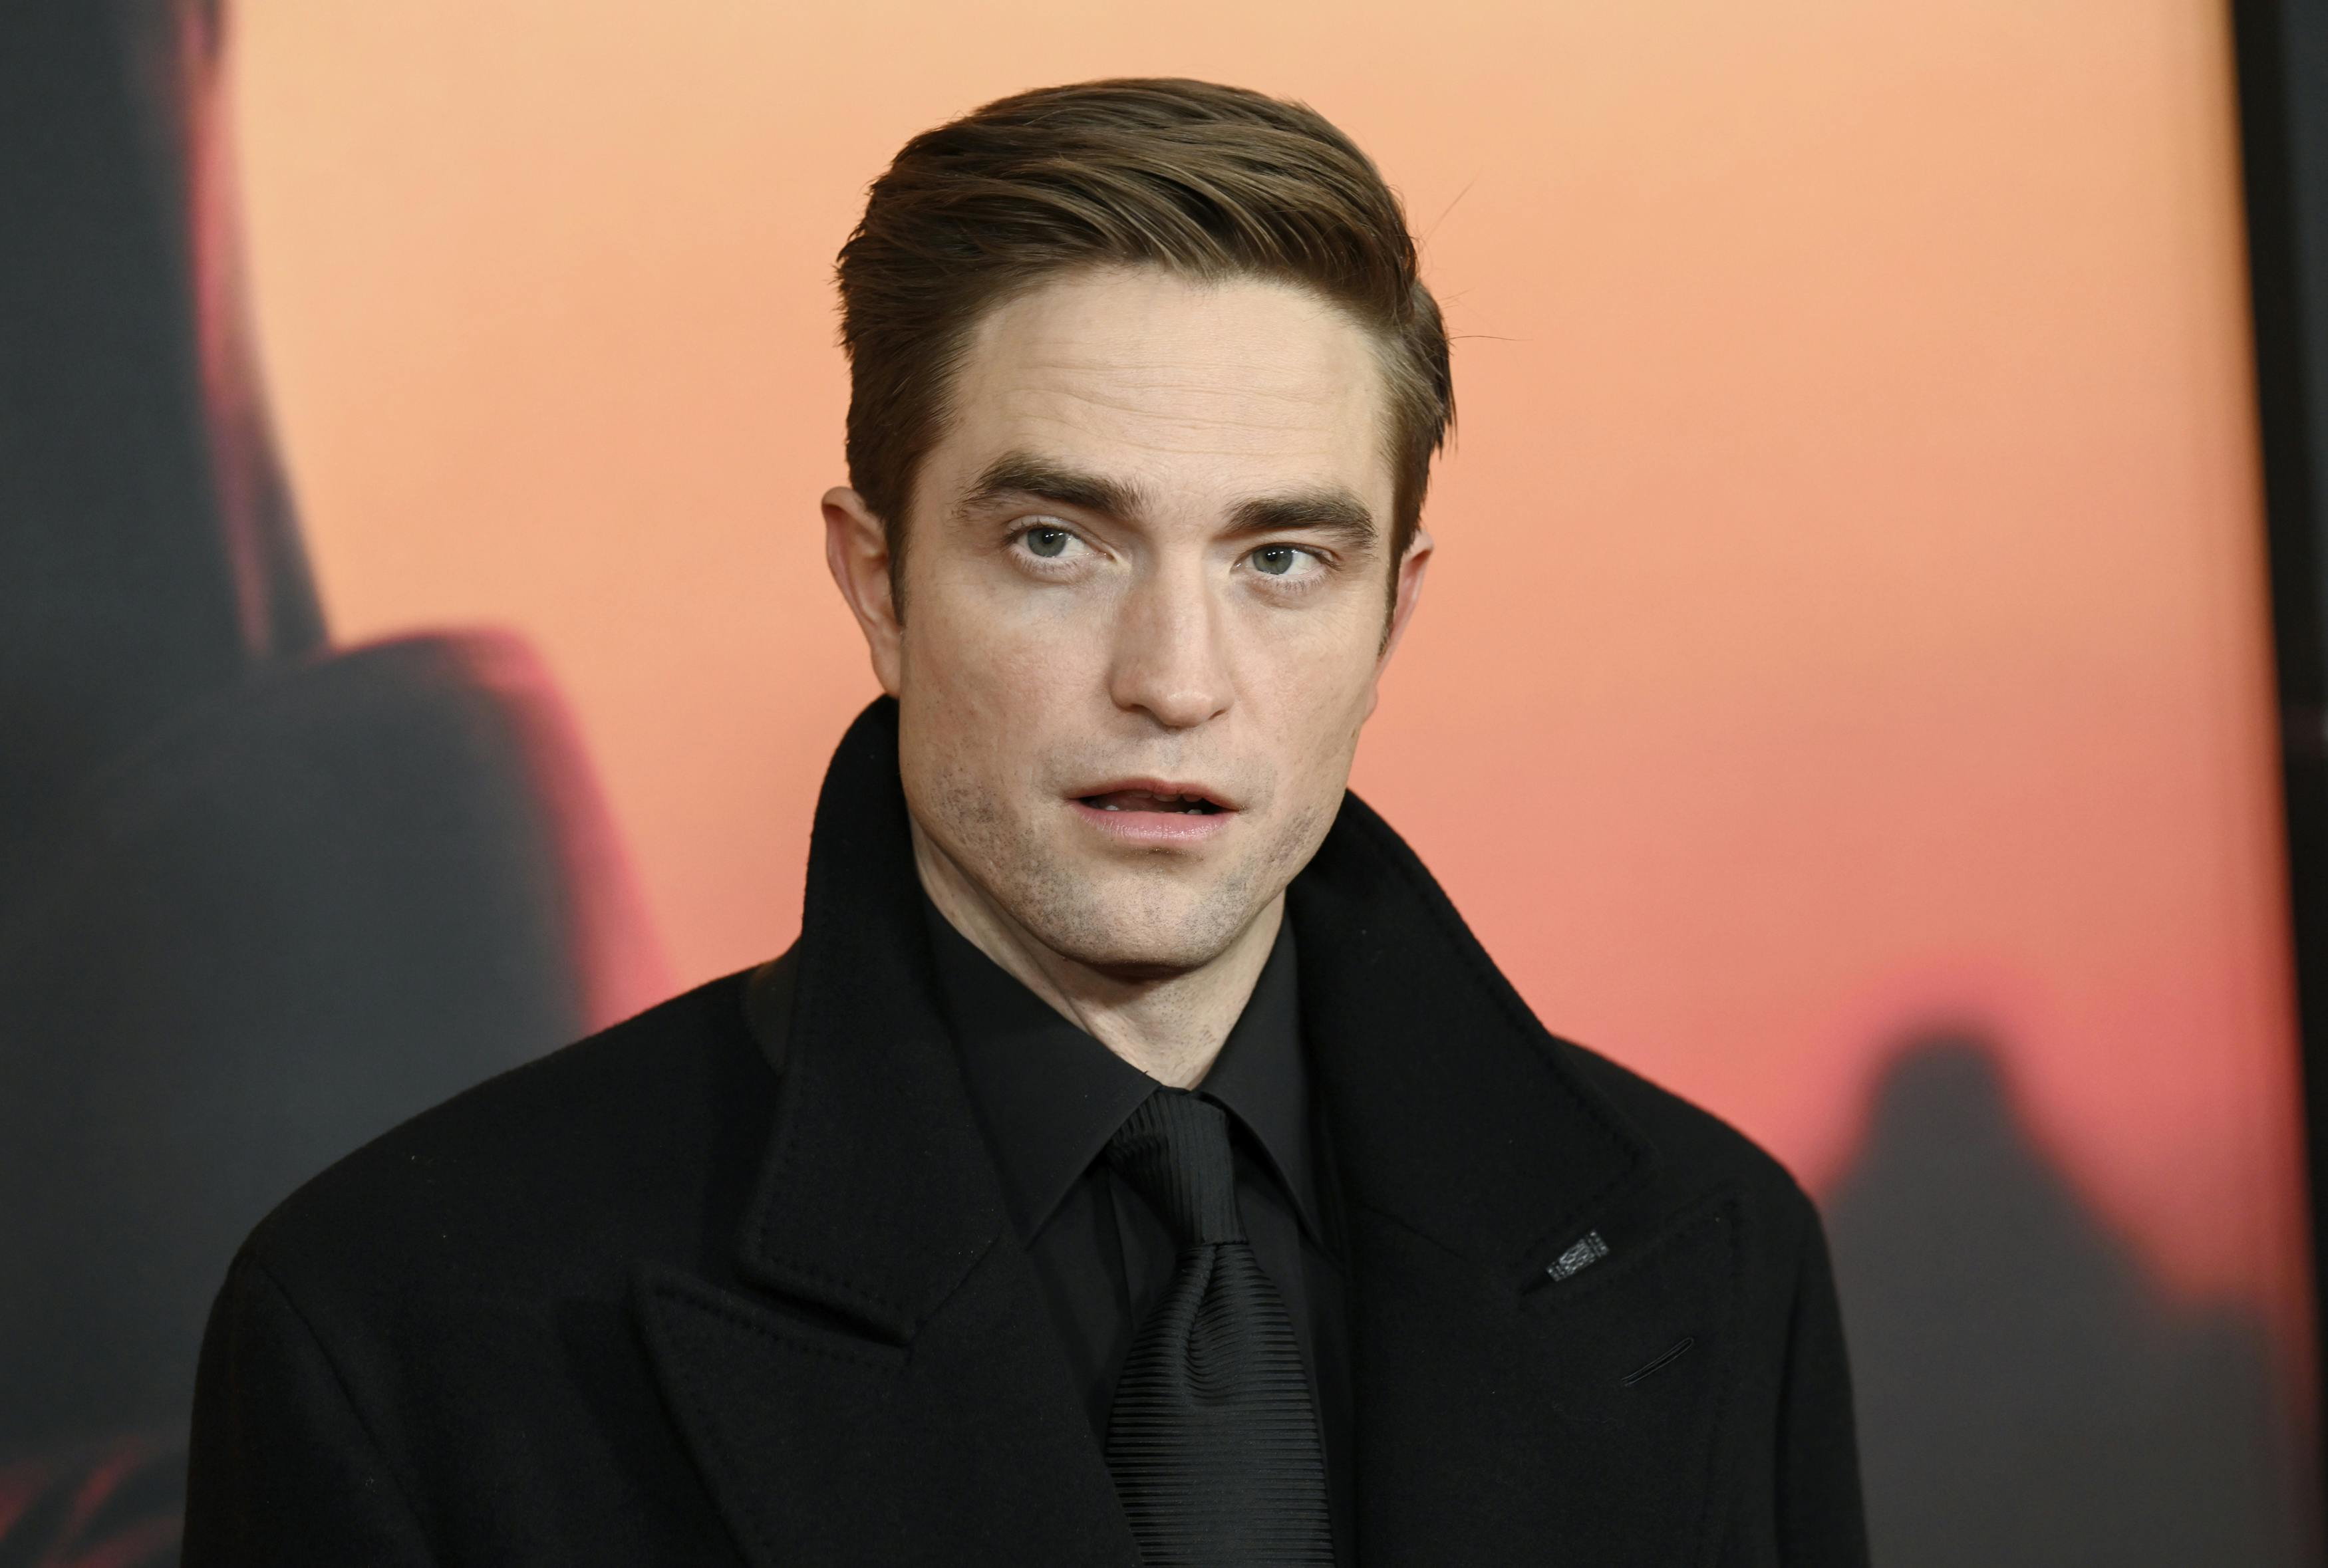 Robert Pattinson spiller "The Batman", og det stiller krav til hans fysik. nbsp;